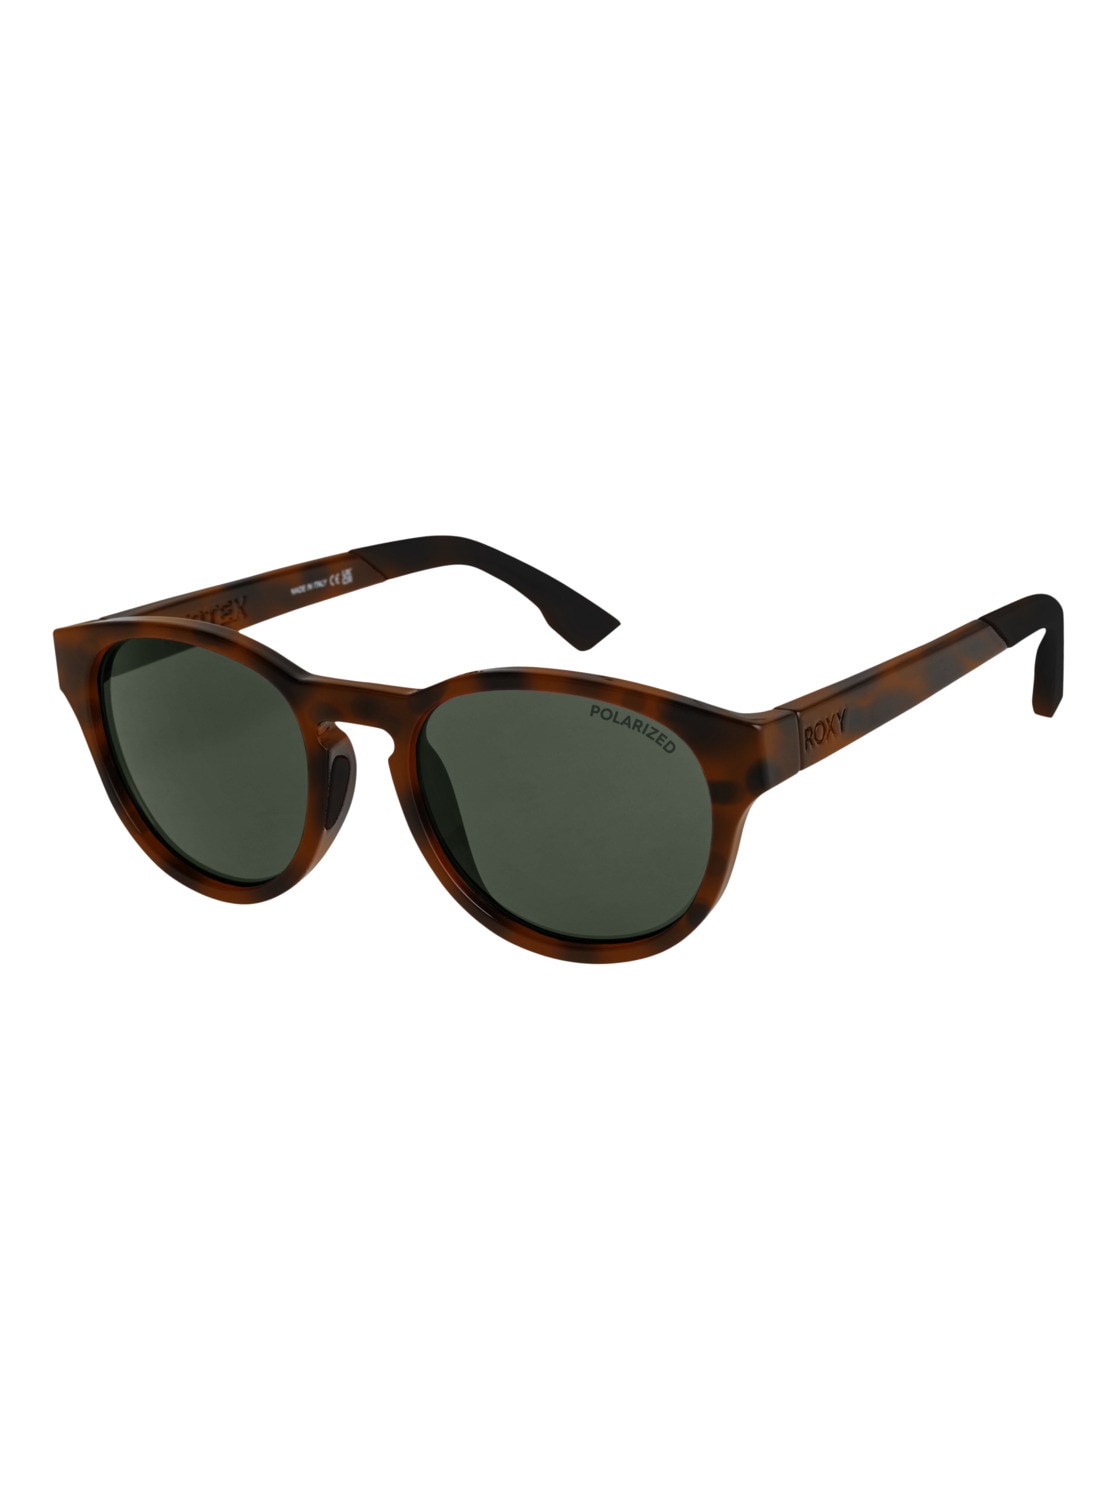 Roxy Sonnenbrille »Vertex P« bei OTTOversand